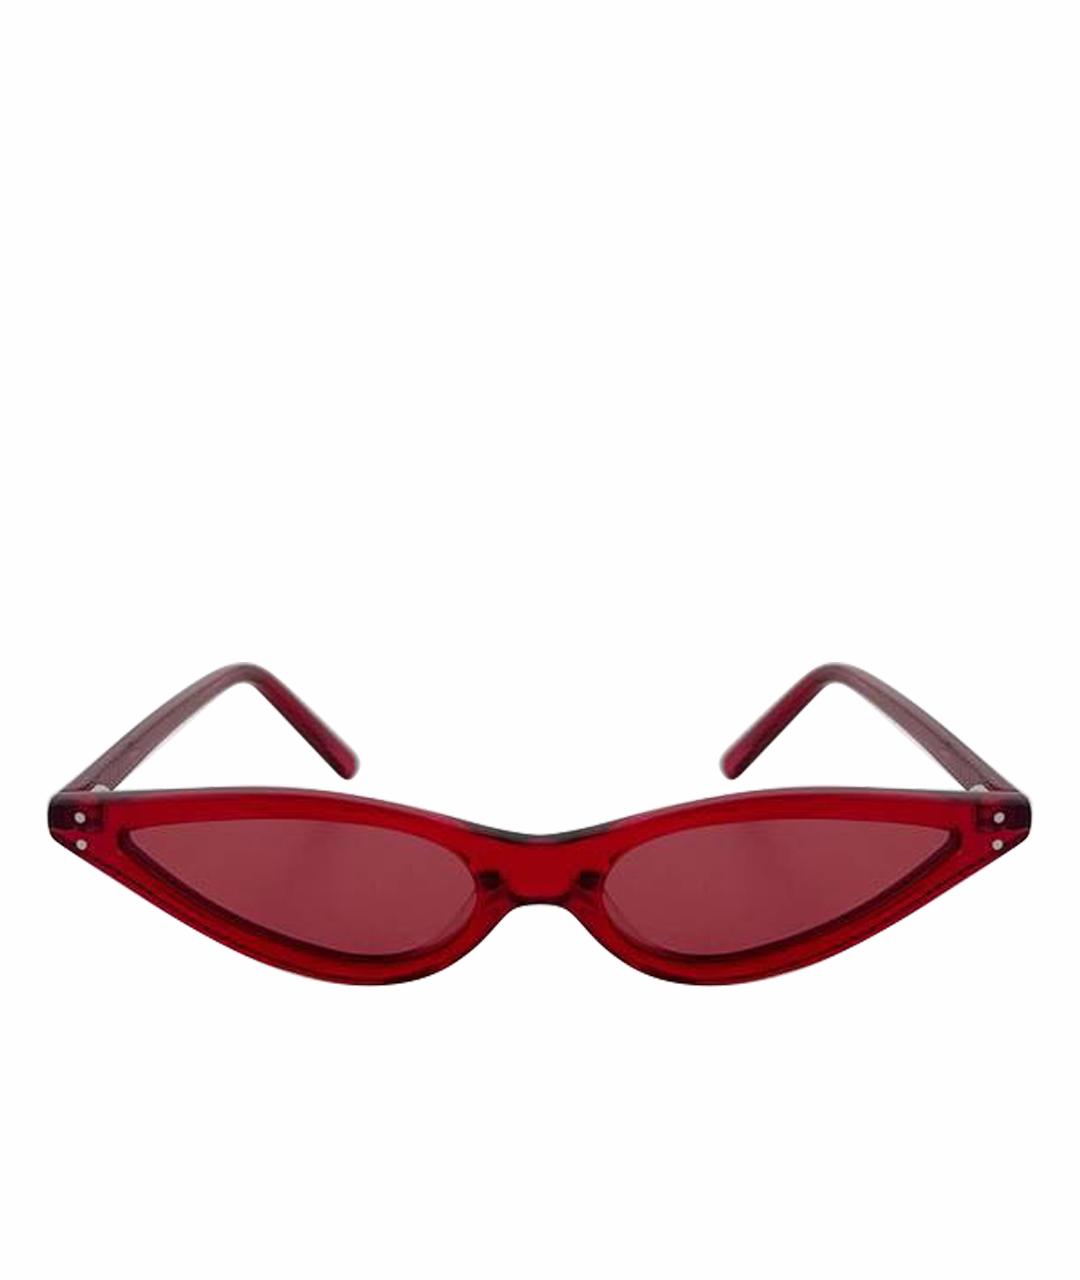 GEORGE KEBURIA Красные пластиковые солнцезащитные очки, фото 1